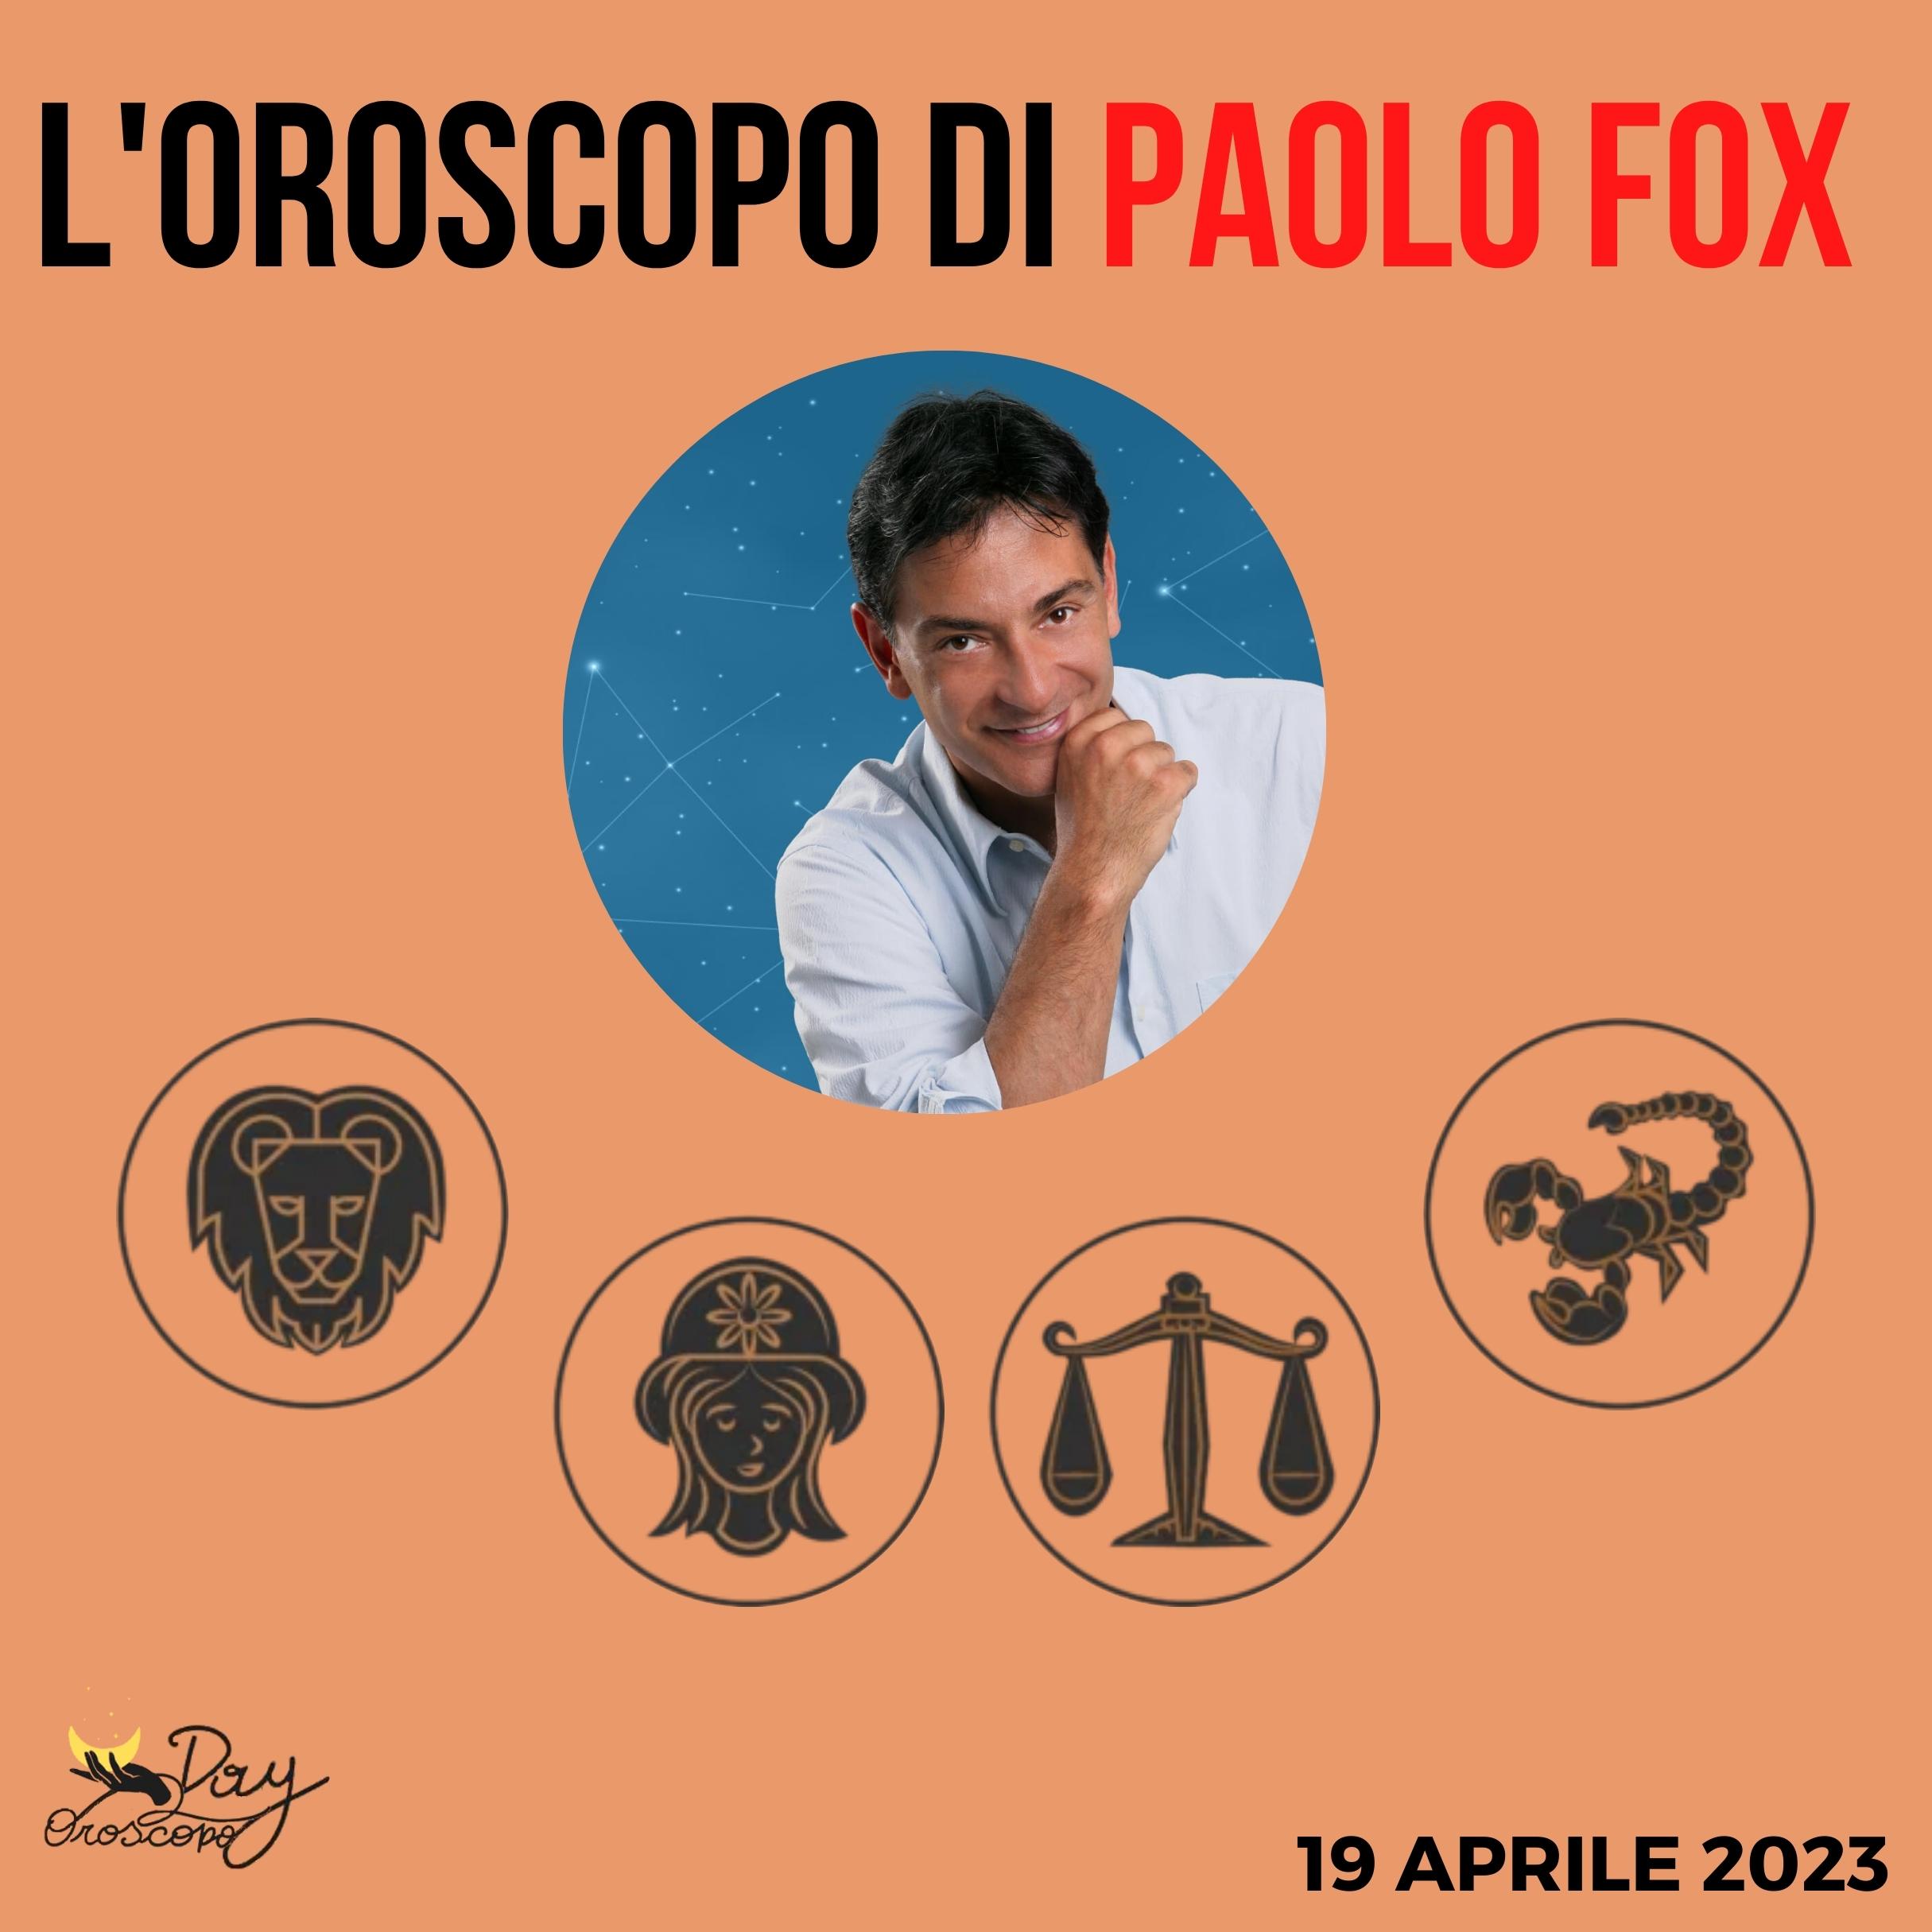 Oroscopo oggi Paolo Fox 19 aprile 2023 Leone Vergine Bilancia Scorpione